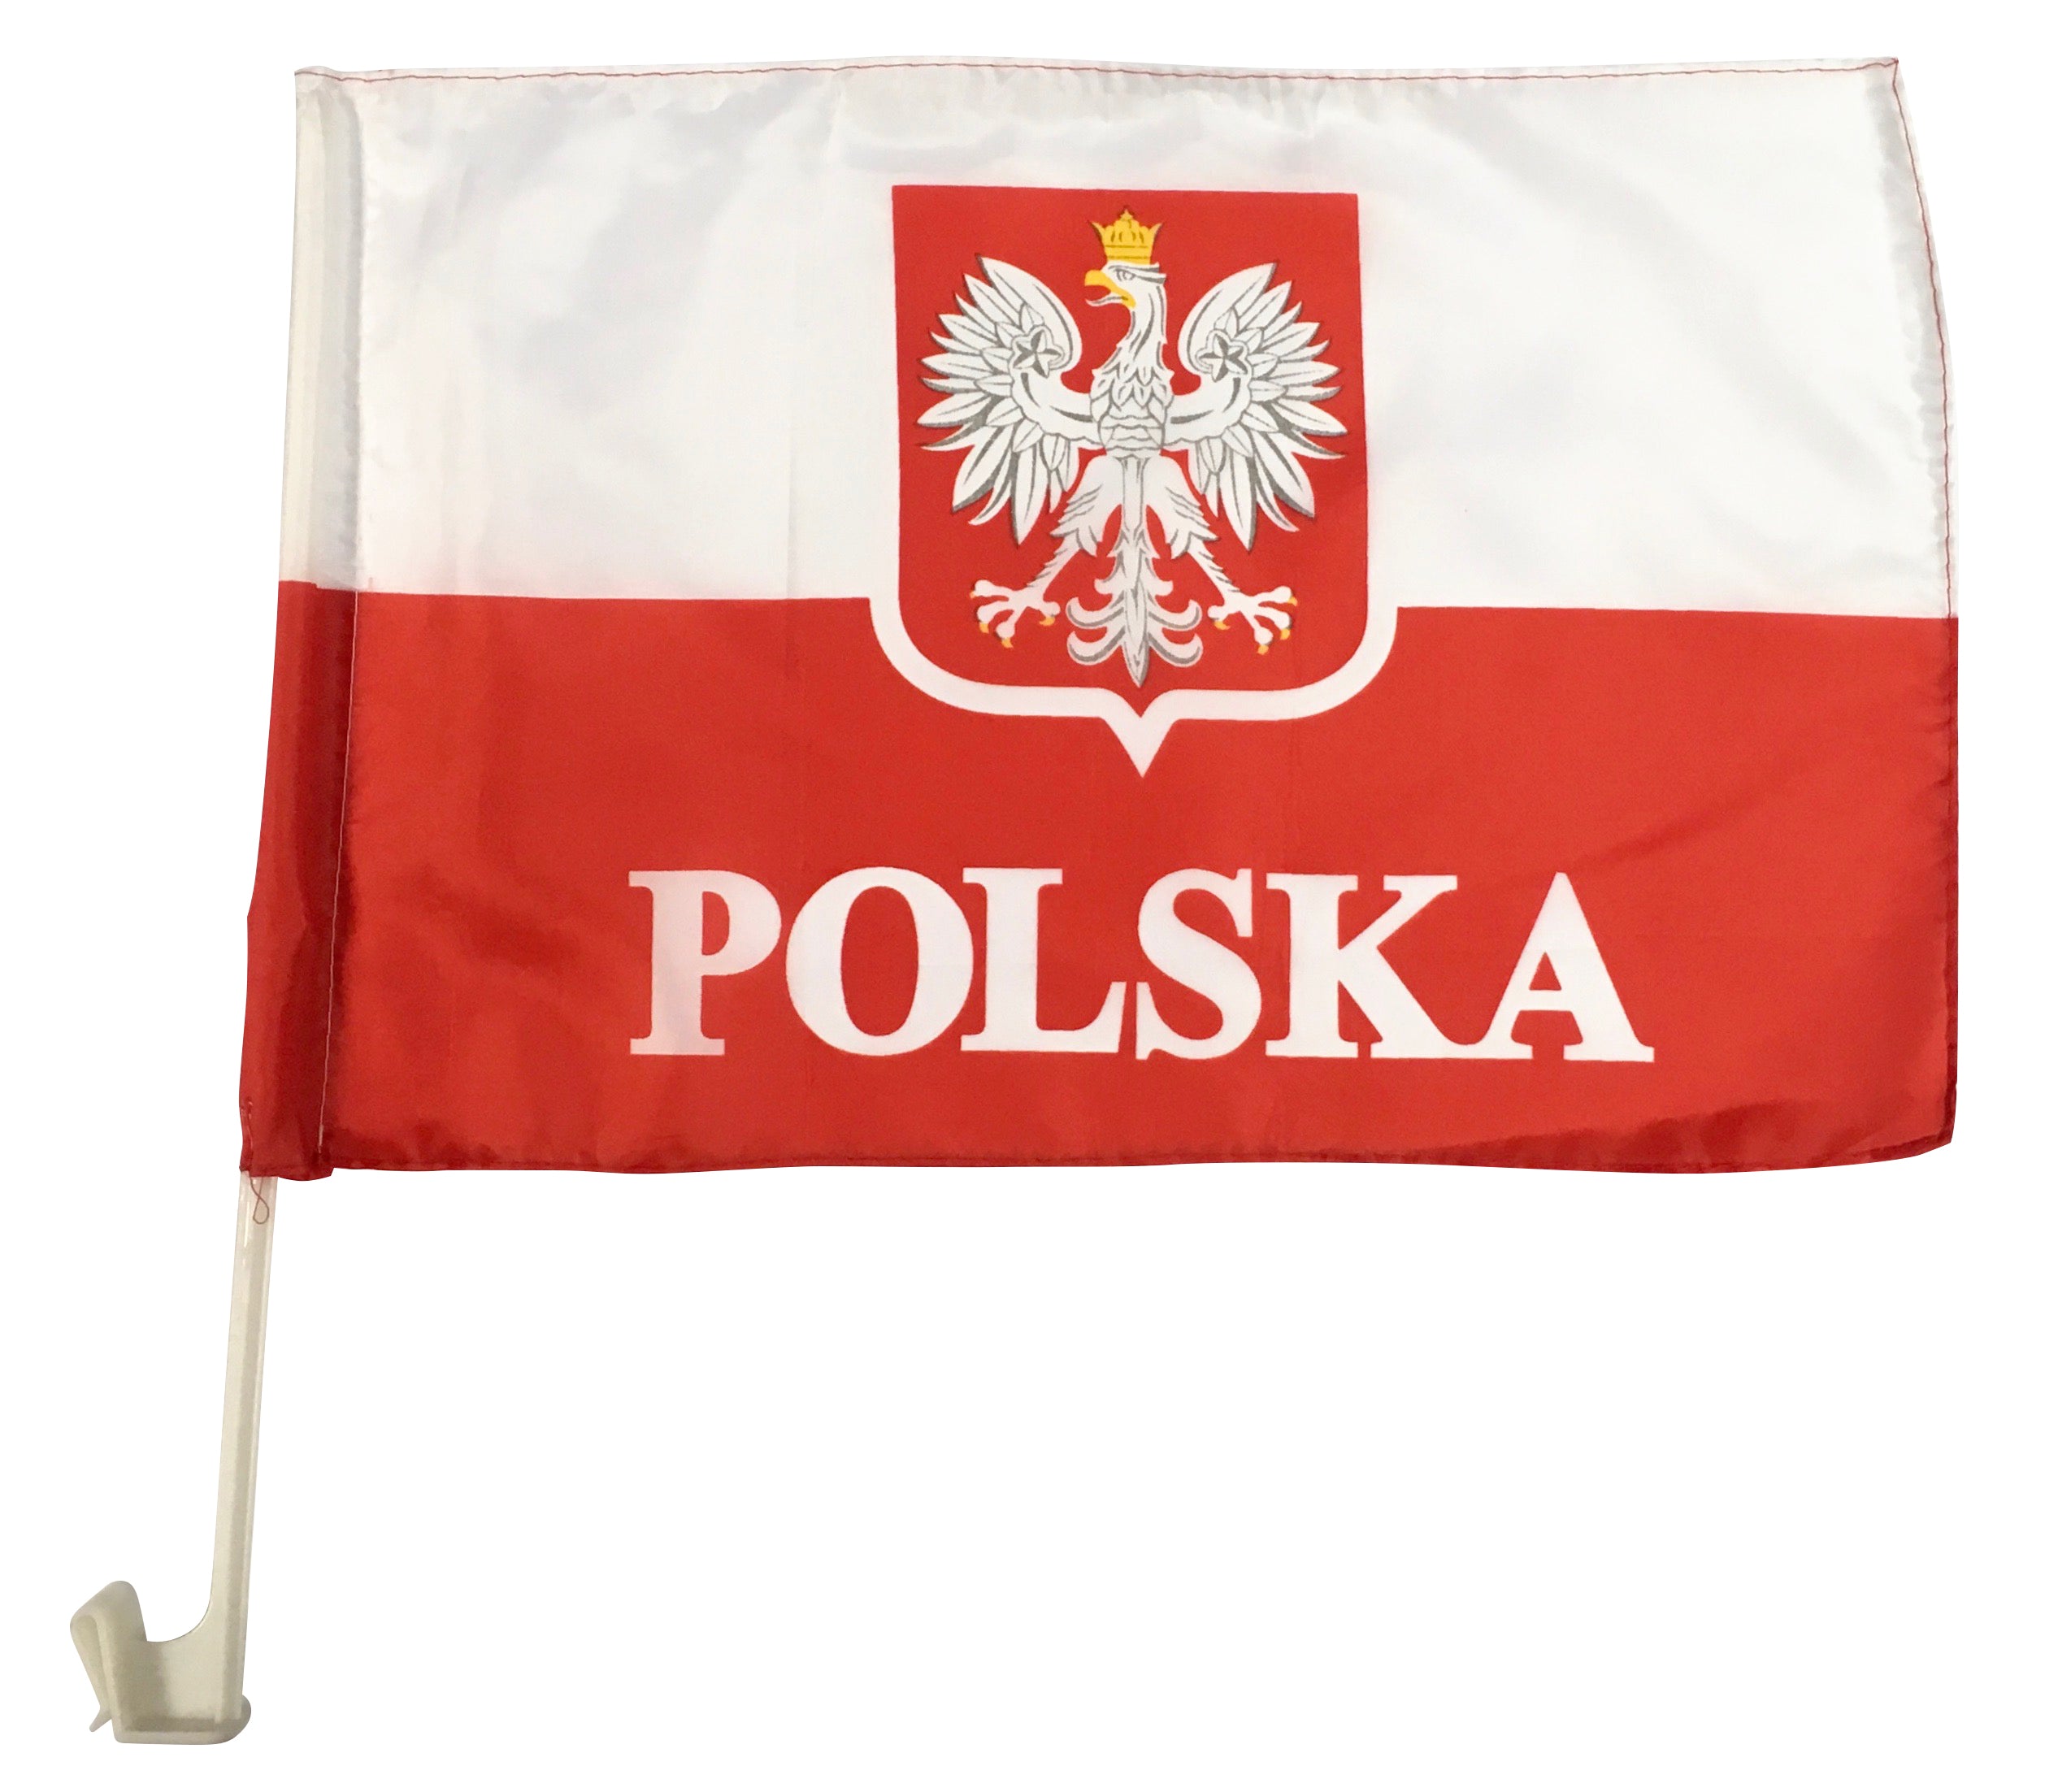 Polish Car Flag with POLSKA & Eagle, 16" x 11"